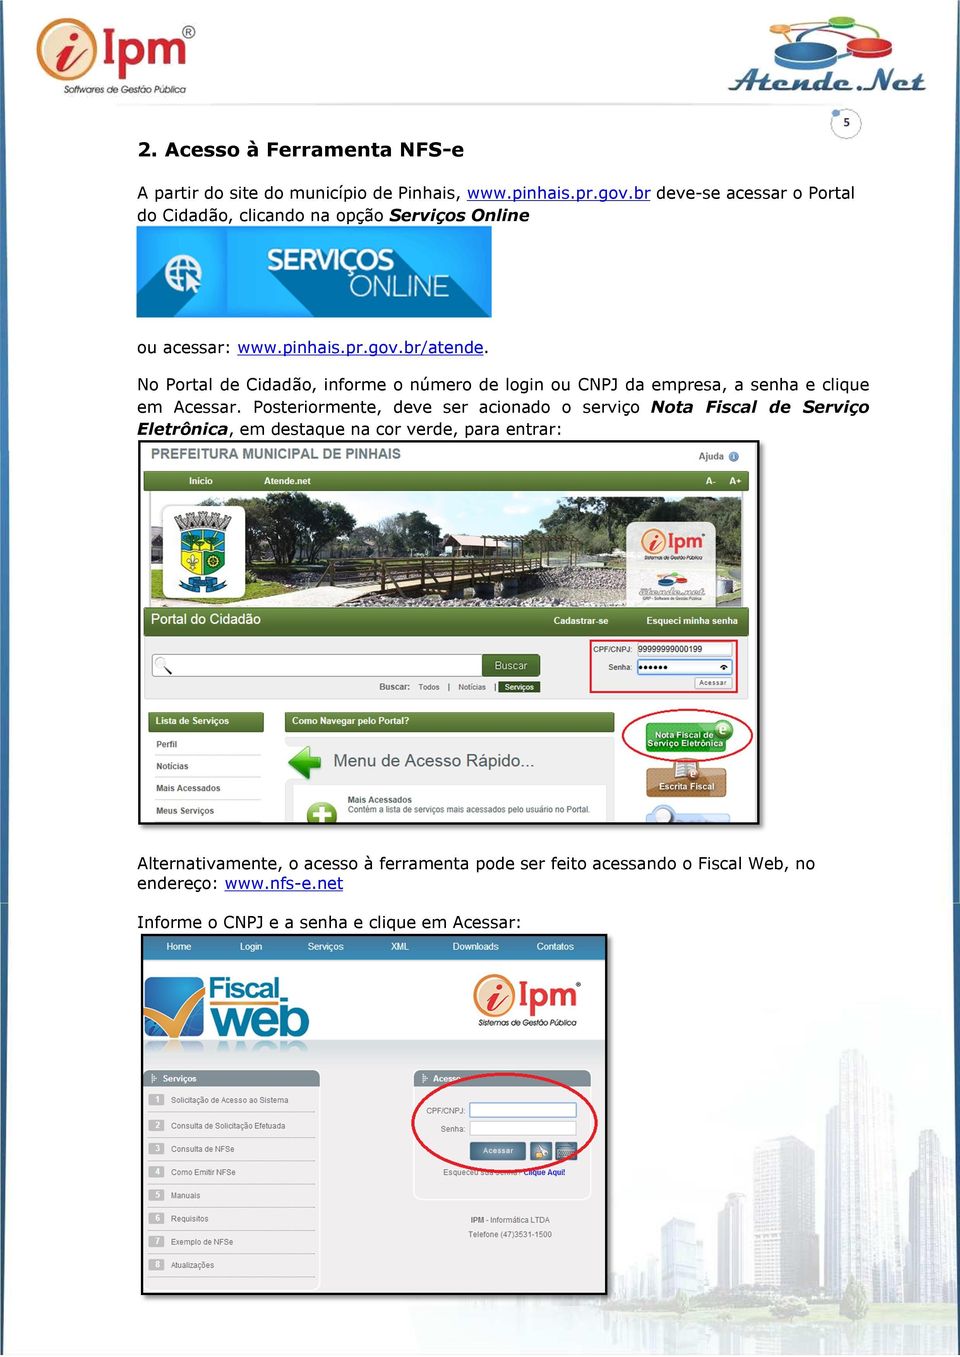 No Portal de Cidadão, informe o número de login ou CNPJ da empresa, a senha e clique em Acessar.